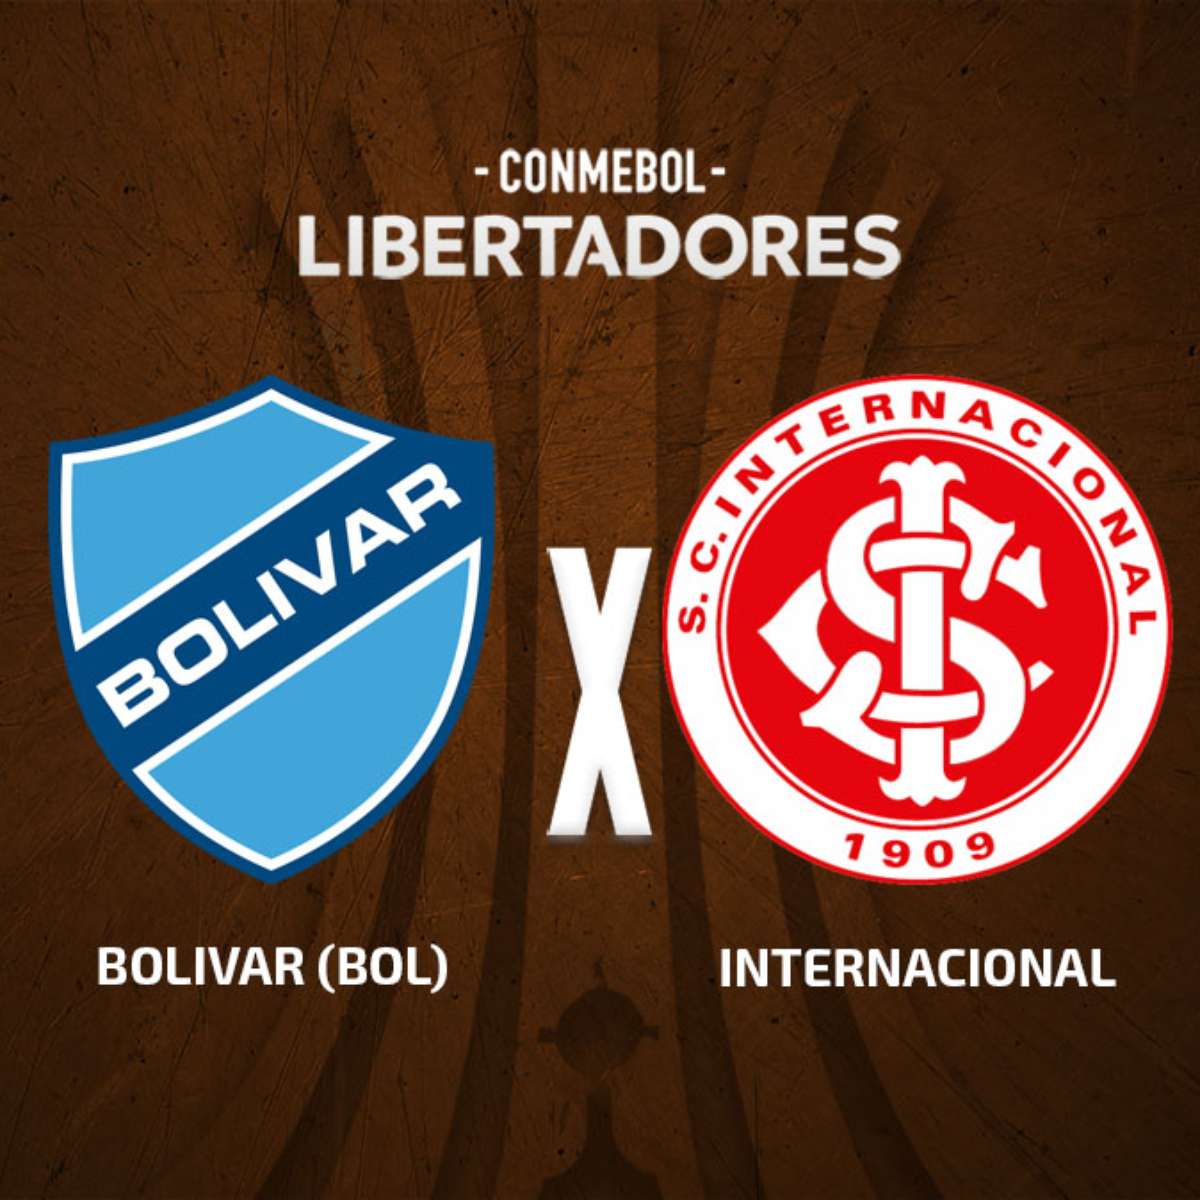 Bolivar REY De COPAS - Preparado para voltar a sentir a 𝗩𝗜𝗕𝗥𝗔𝗖̧𝗔̃𝗢  𝗗𝗢 𝗕𝗘𝗦𝗦𝗔? 💯 Vamos receber o Club Bolívar, atual campeão da Bolívia  🇧🇴, no 𝗷𝗼𝗴𝗼 𝗱𝗲 𝗮𝗽𝗿𝗲𝘀𝗲𝗻𝘁𝗮𝗰̧𝗮̃𝗼 aos Sócios ⚽